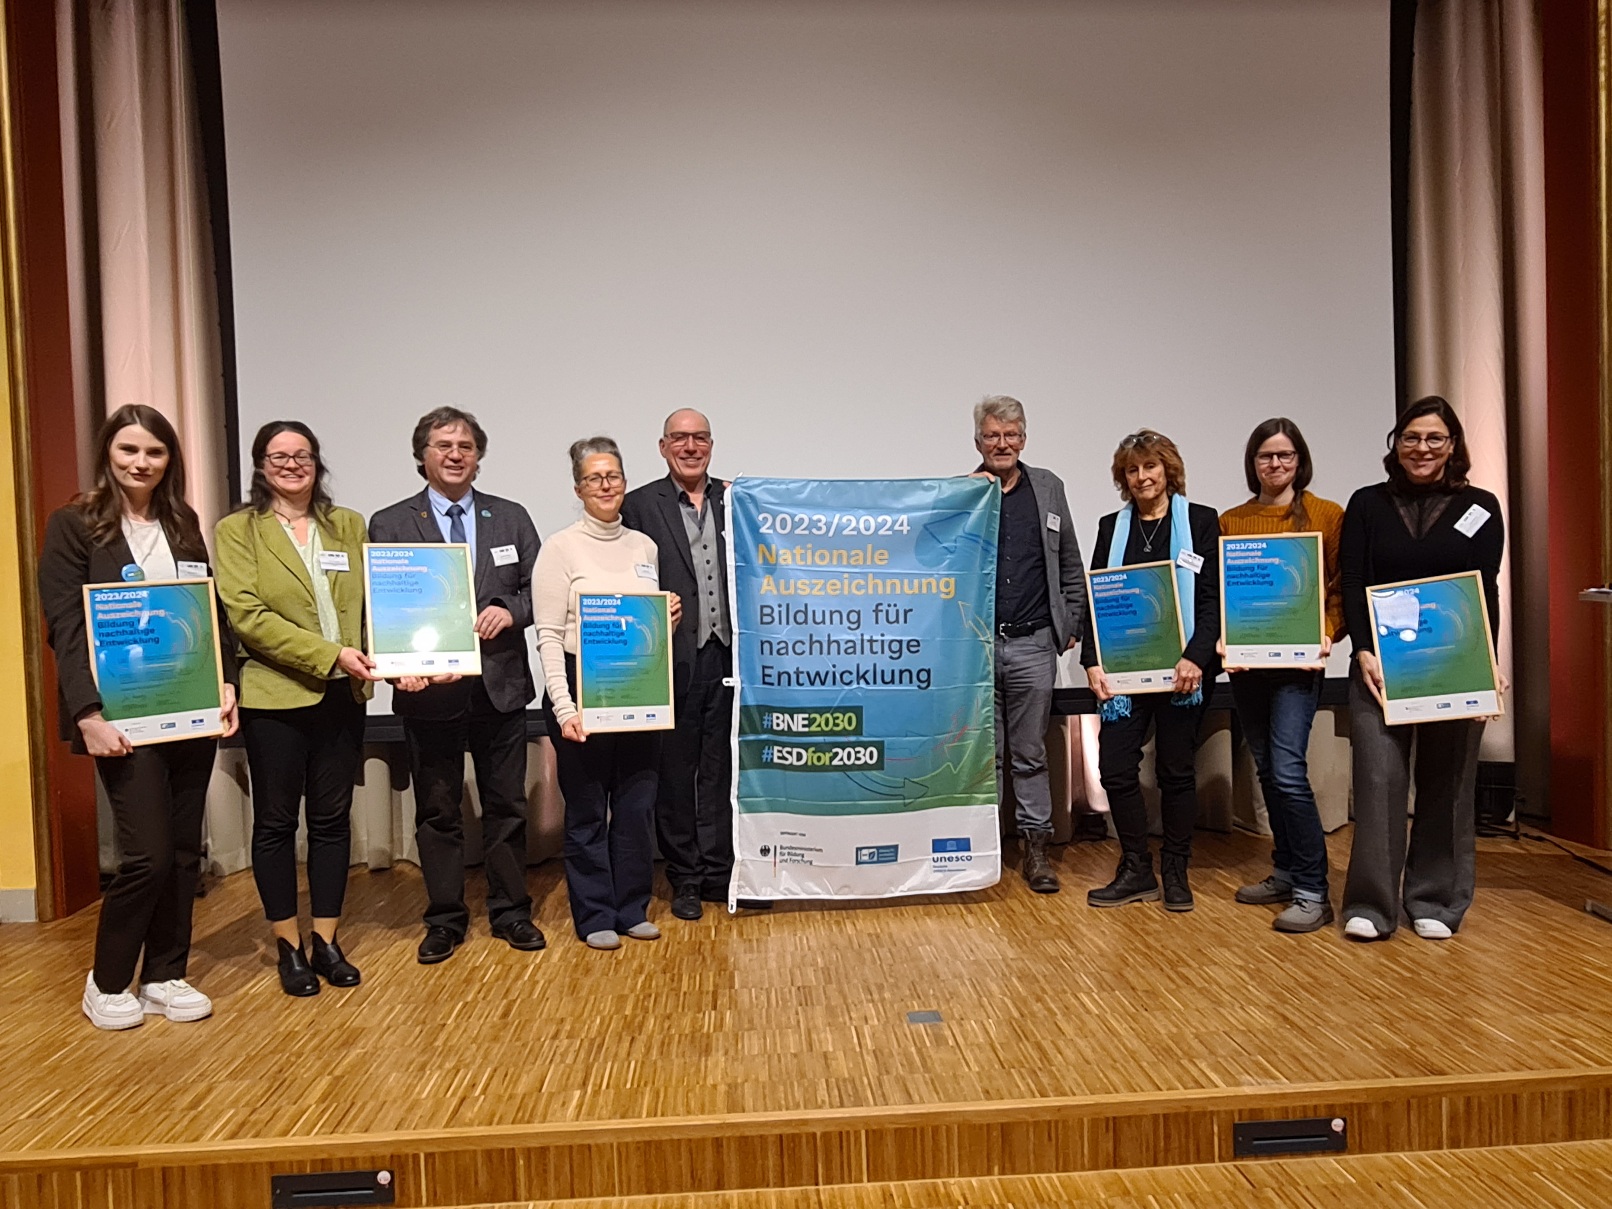 Unter den 29 Initiativen waren sechs deutsche UNESCO Global Geoparks, die in Schwerin die Nationale Auszeichnung für Bildung für nachhaltige Entwicklung erhalten haben. Neben der Vulkaneifel sind dies: Thüringen Inselsberg - Drei Gleichen, Ries, TERRA.vita, Bergstrasse-Odenwald, Harz • Braunschweiger Land • Ostfalen. 